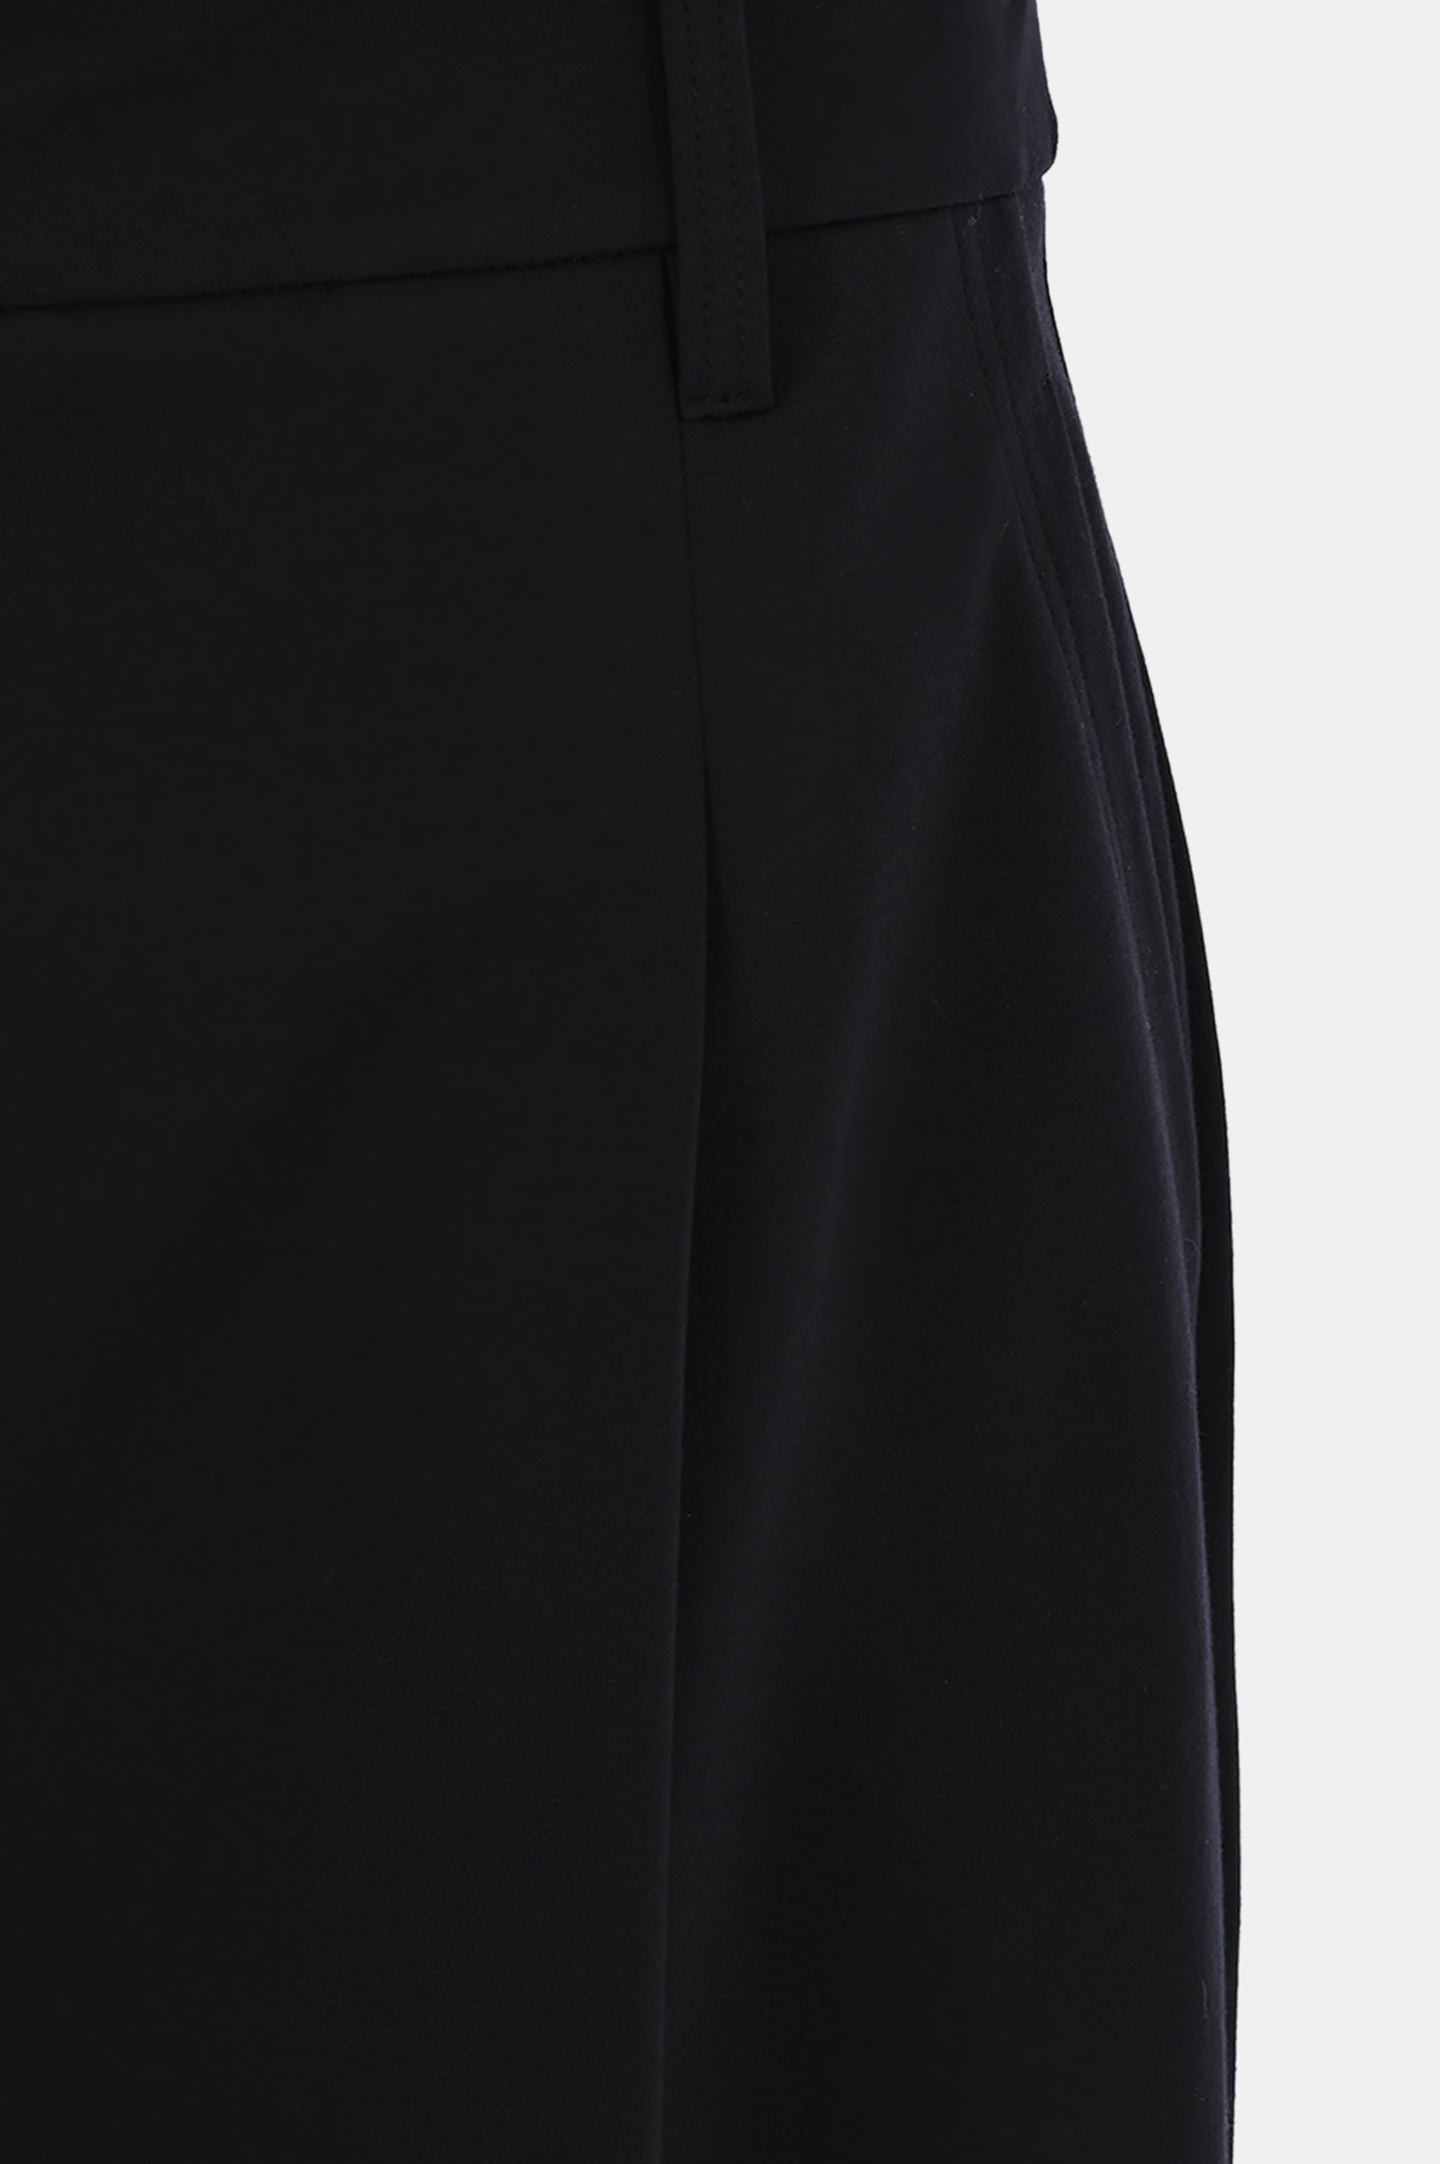 Хлопковые шорты-бермуды  BRUNELLO  CUCINELLI ML946BB399, цвет: Черный, Женский